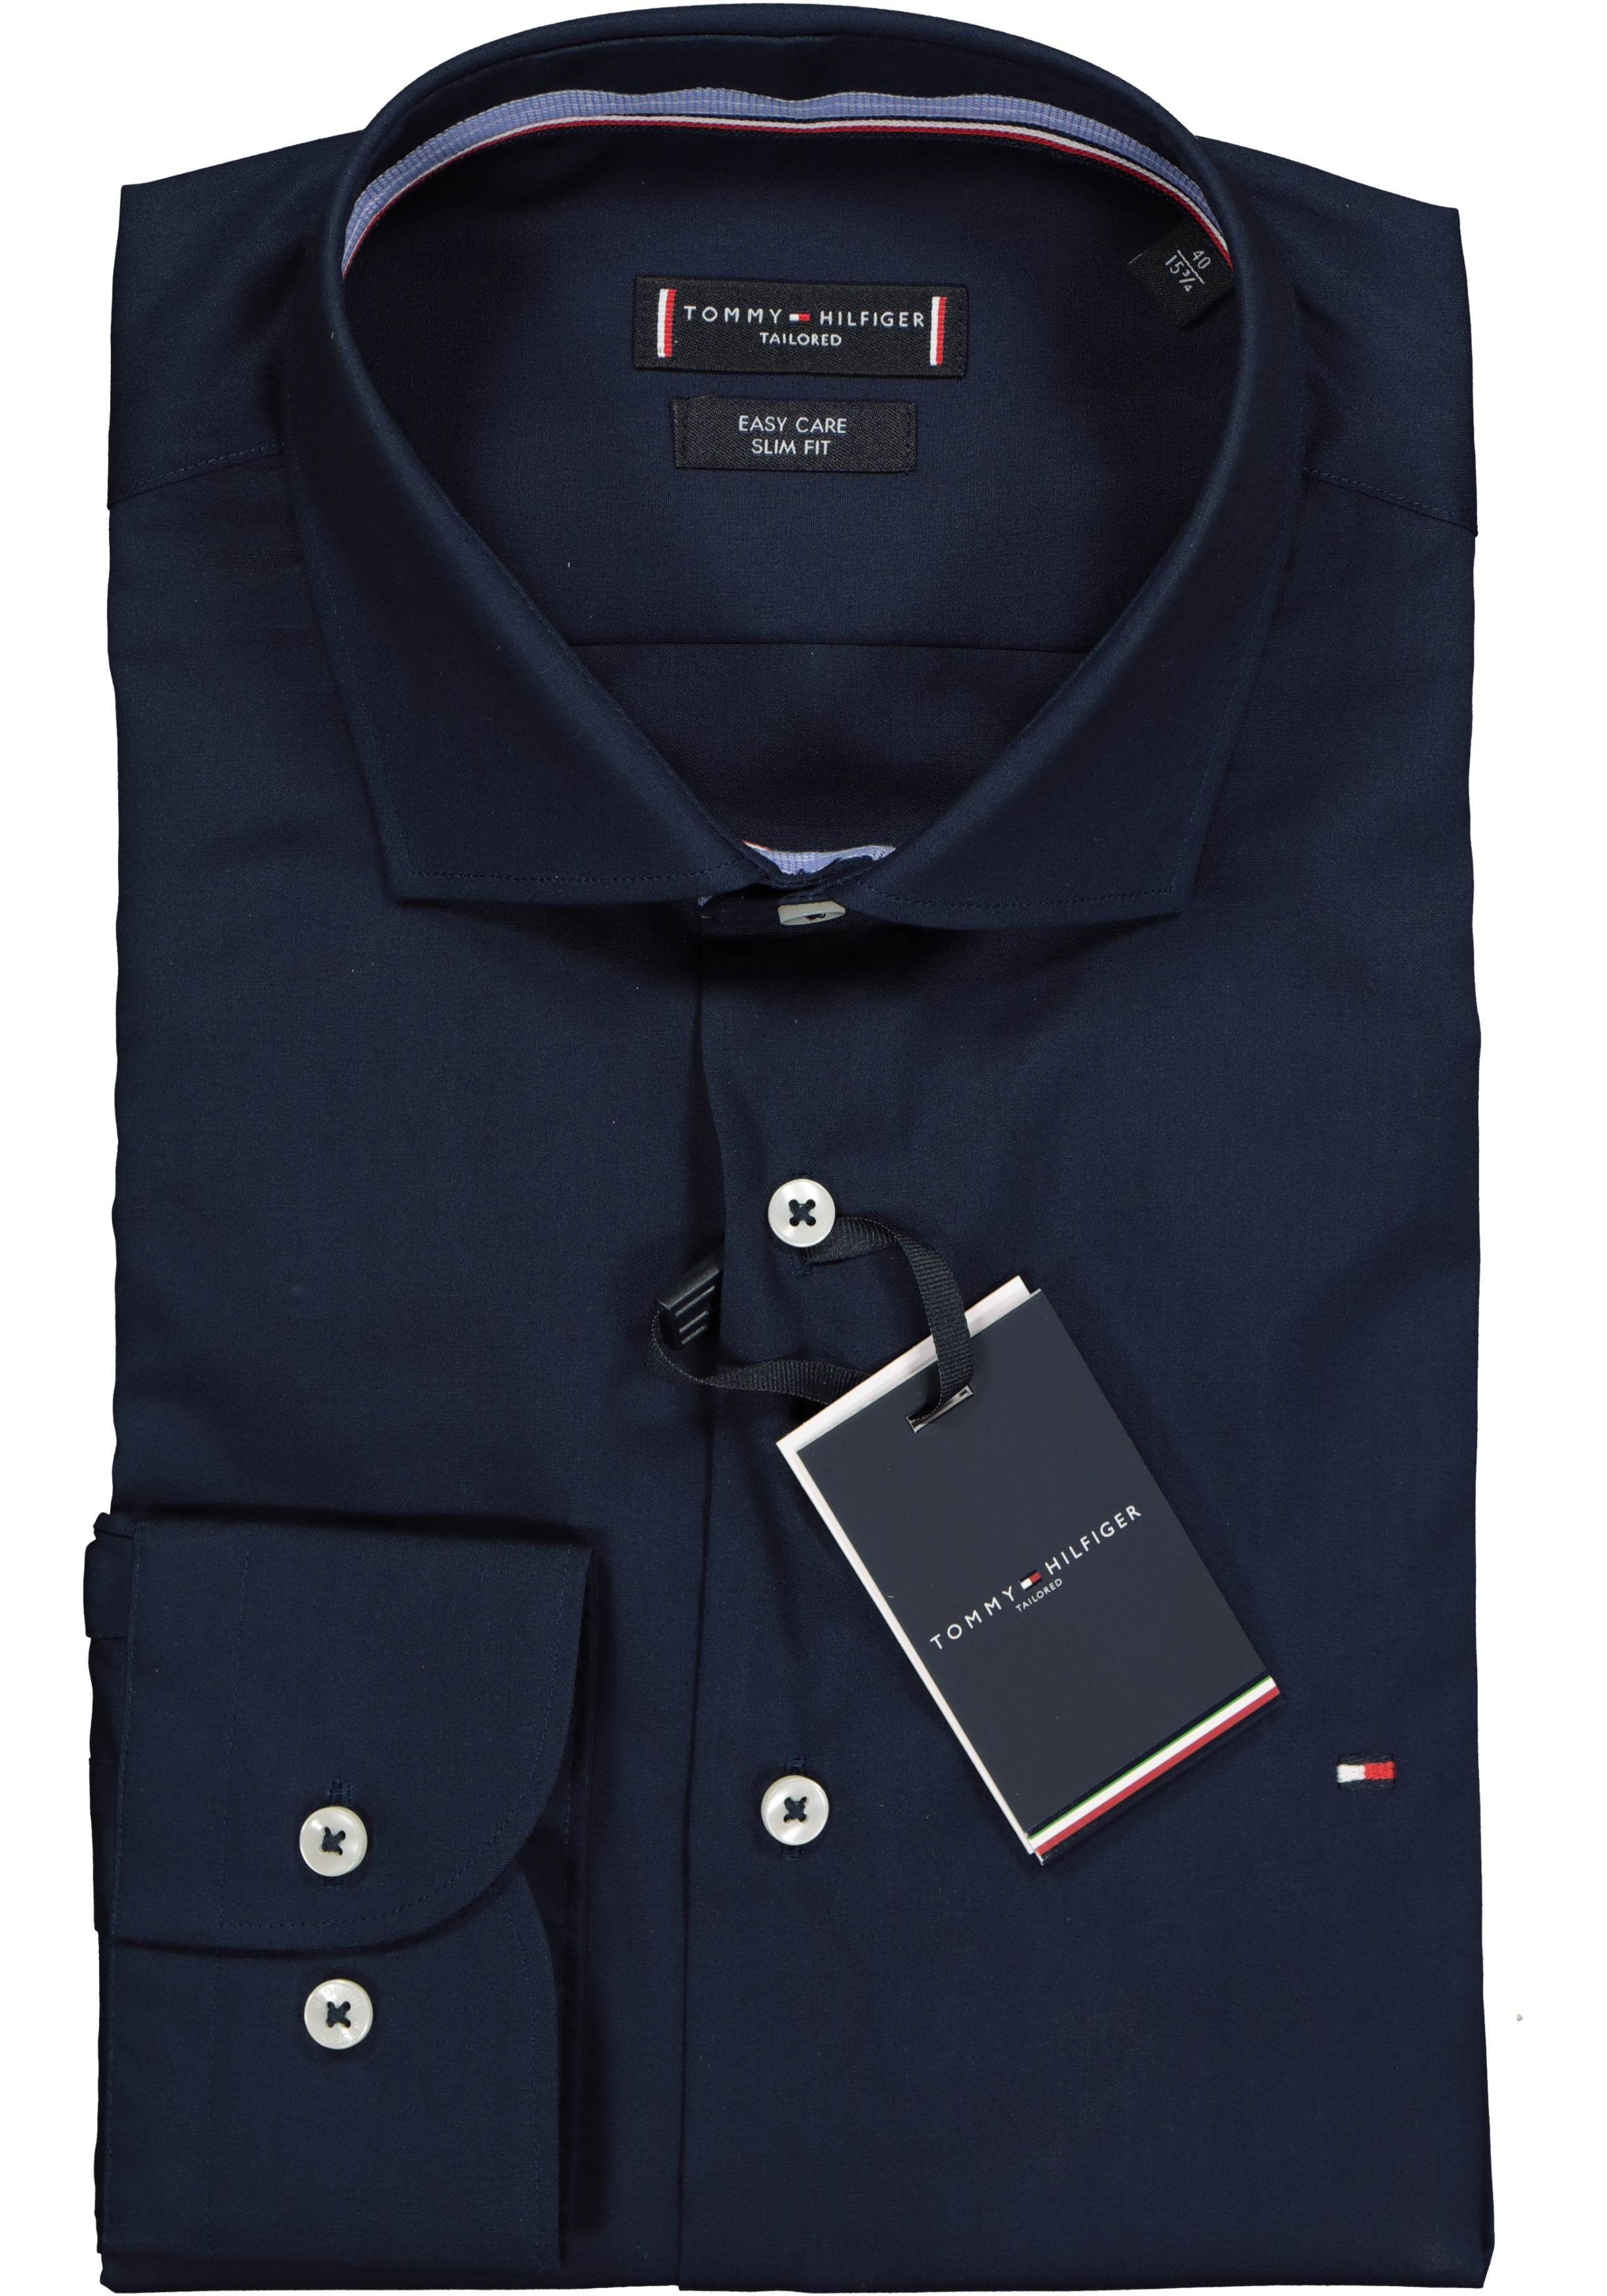 handel nikkel Ladder Tommy Hilfiger Classic slim fit overhemd, donkerblauw (contrast) - Zomer  SALE tot 50% korting